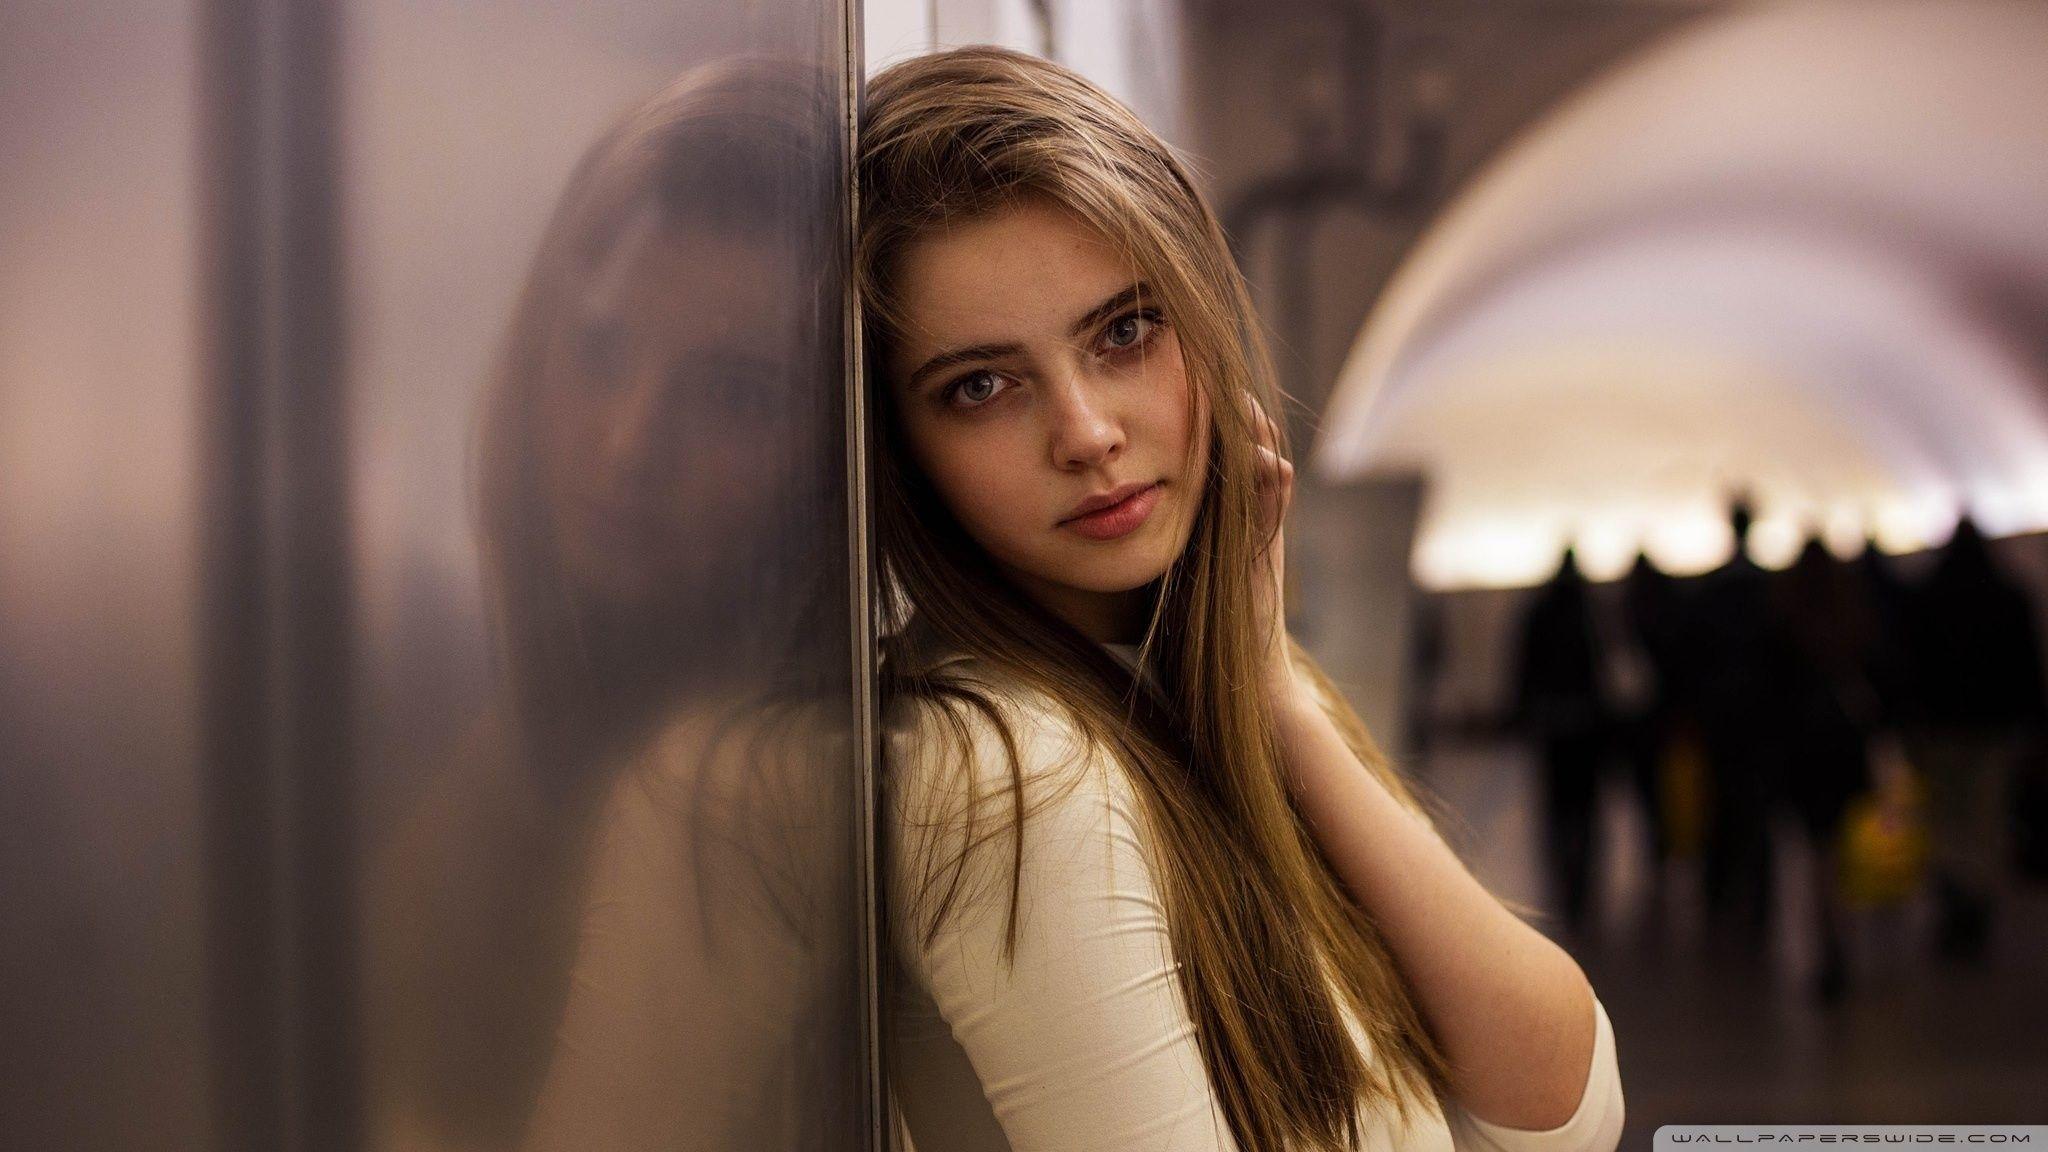 Russian teen beautiful 10 most